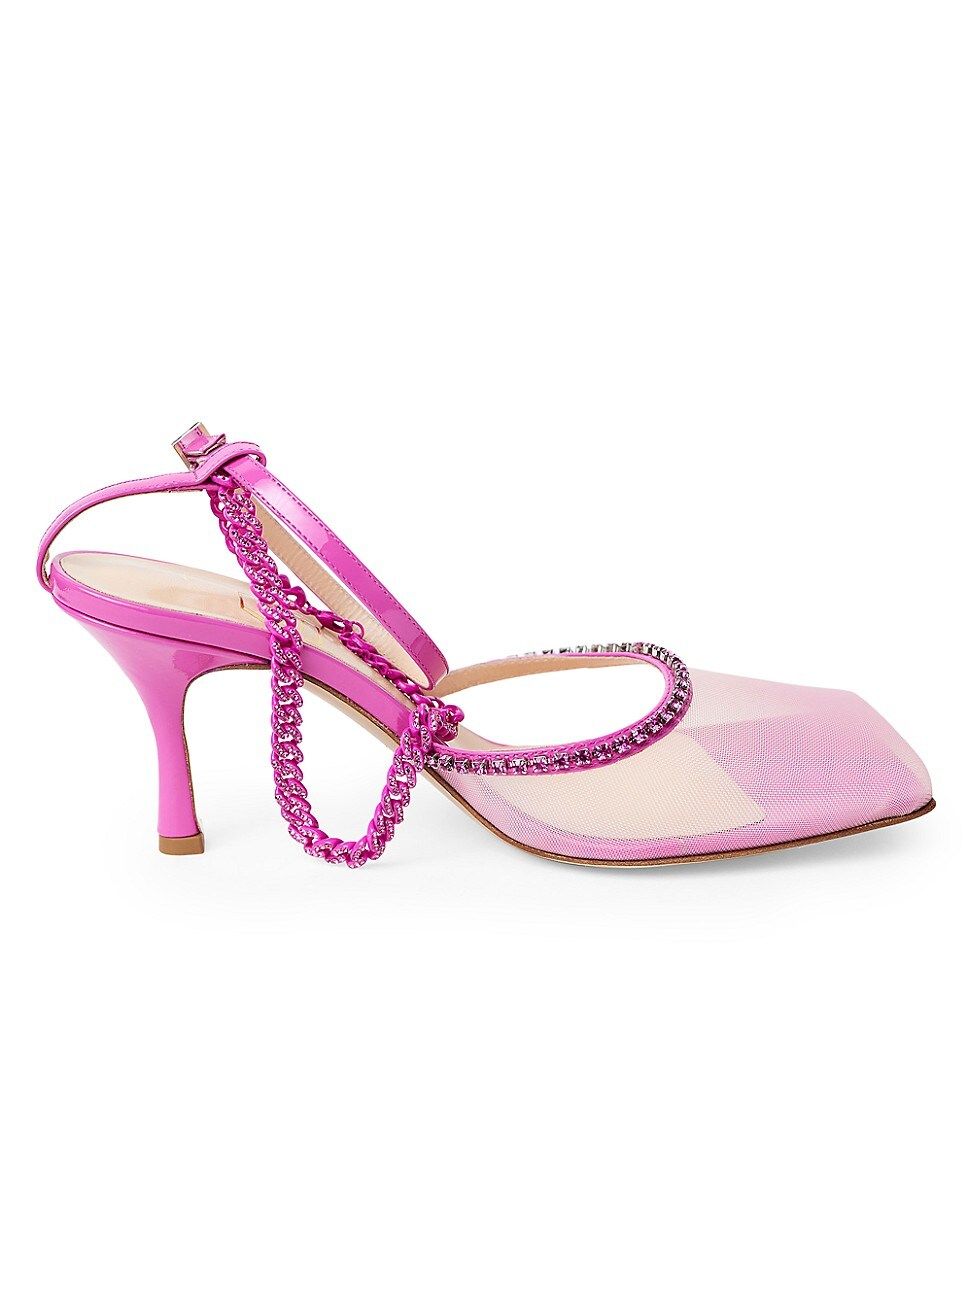 Stellar Crystal-Embellished Ankle-Strap Pumps | Saks Fifth Avenue